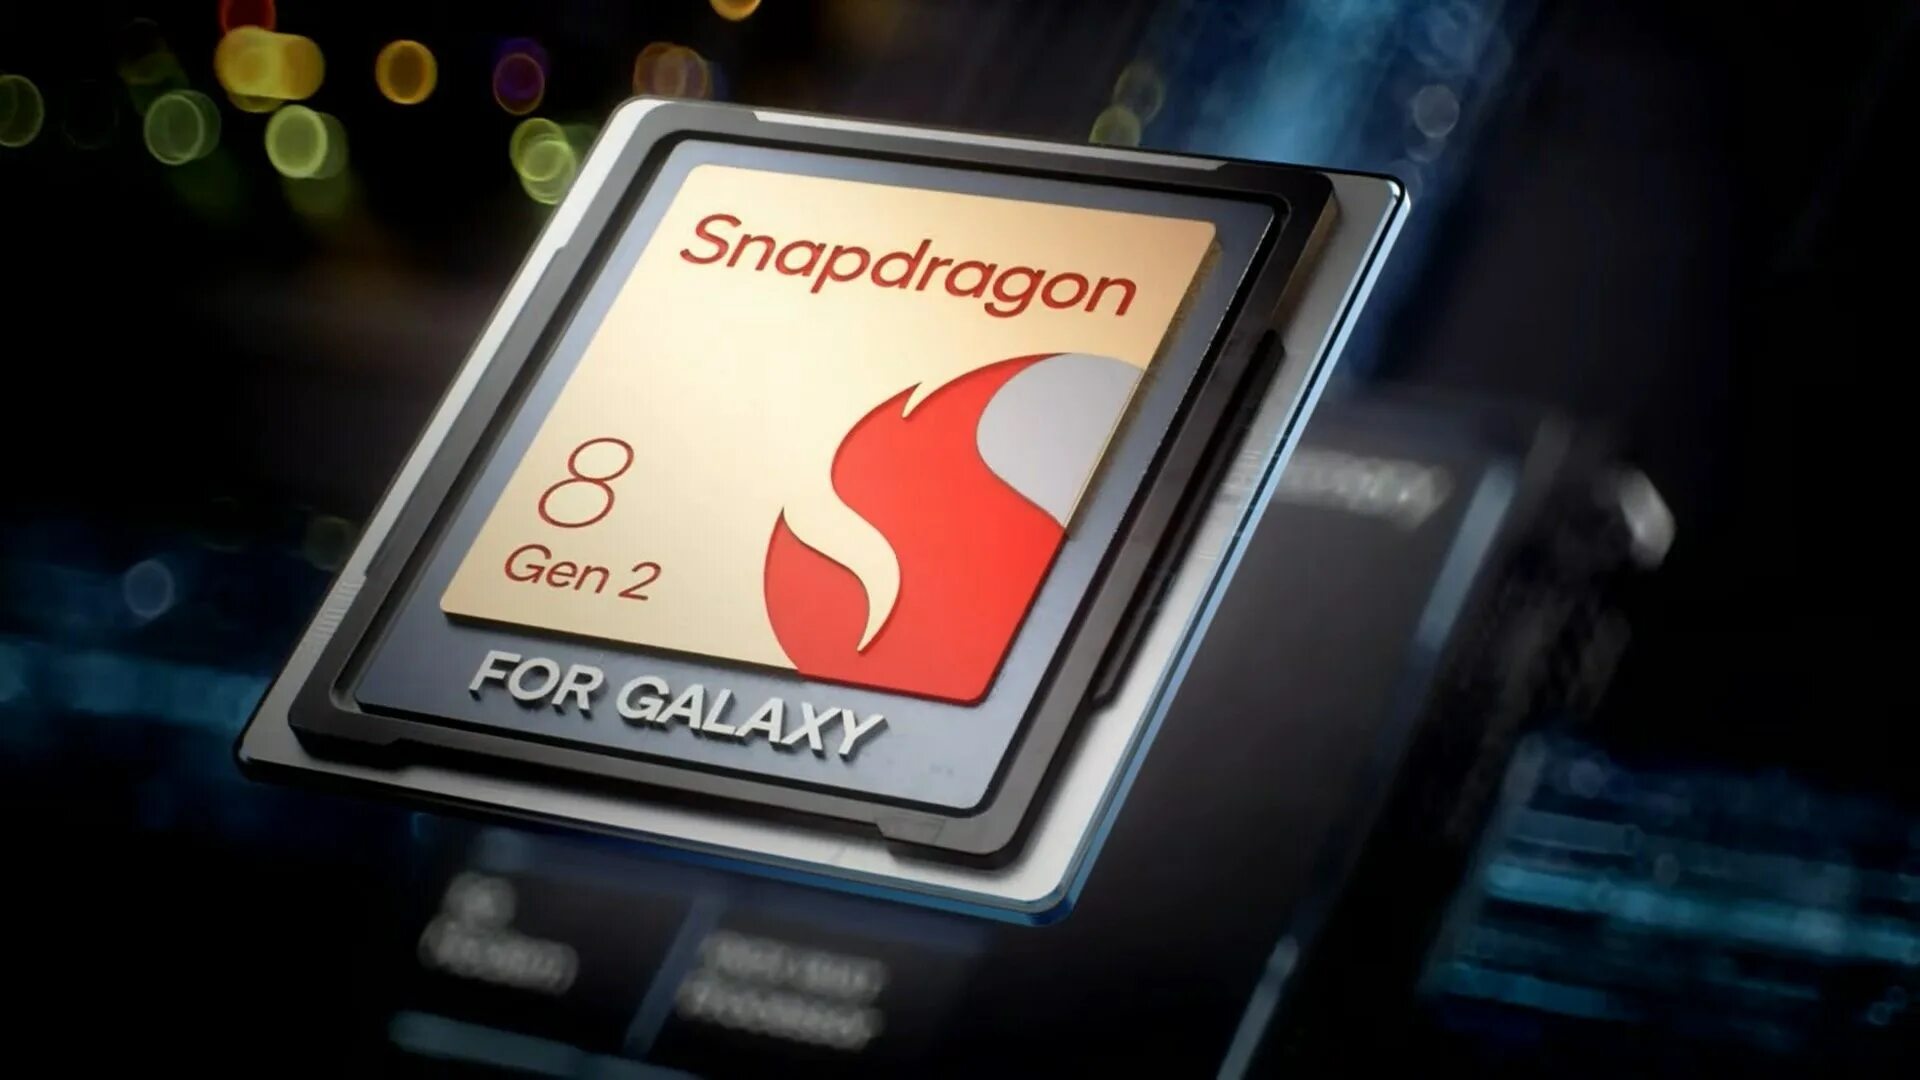 Снапдрагон 8 gen2. Процессор Snapdragon 8 Gen 2. Samsung Galaxy s23 Ultra Qualcomm Snapdragon 8. Чип Snapdragon 8 Gen 2.